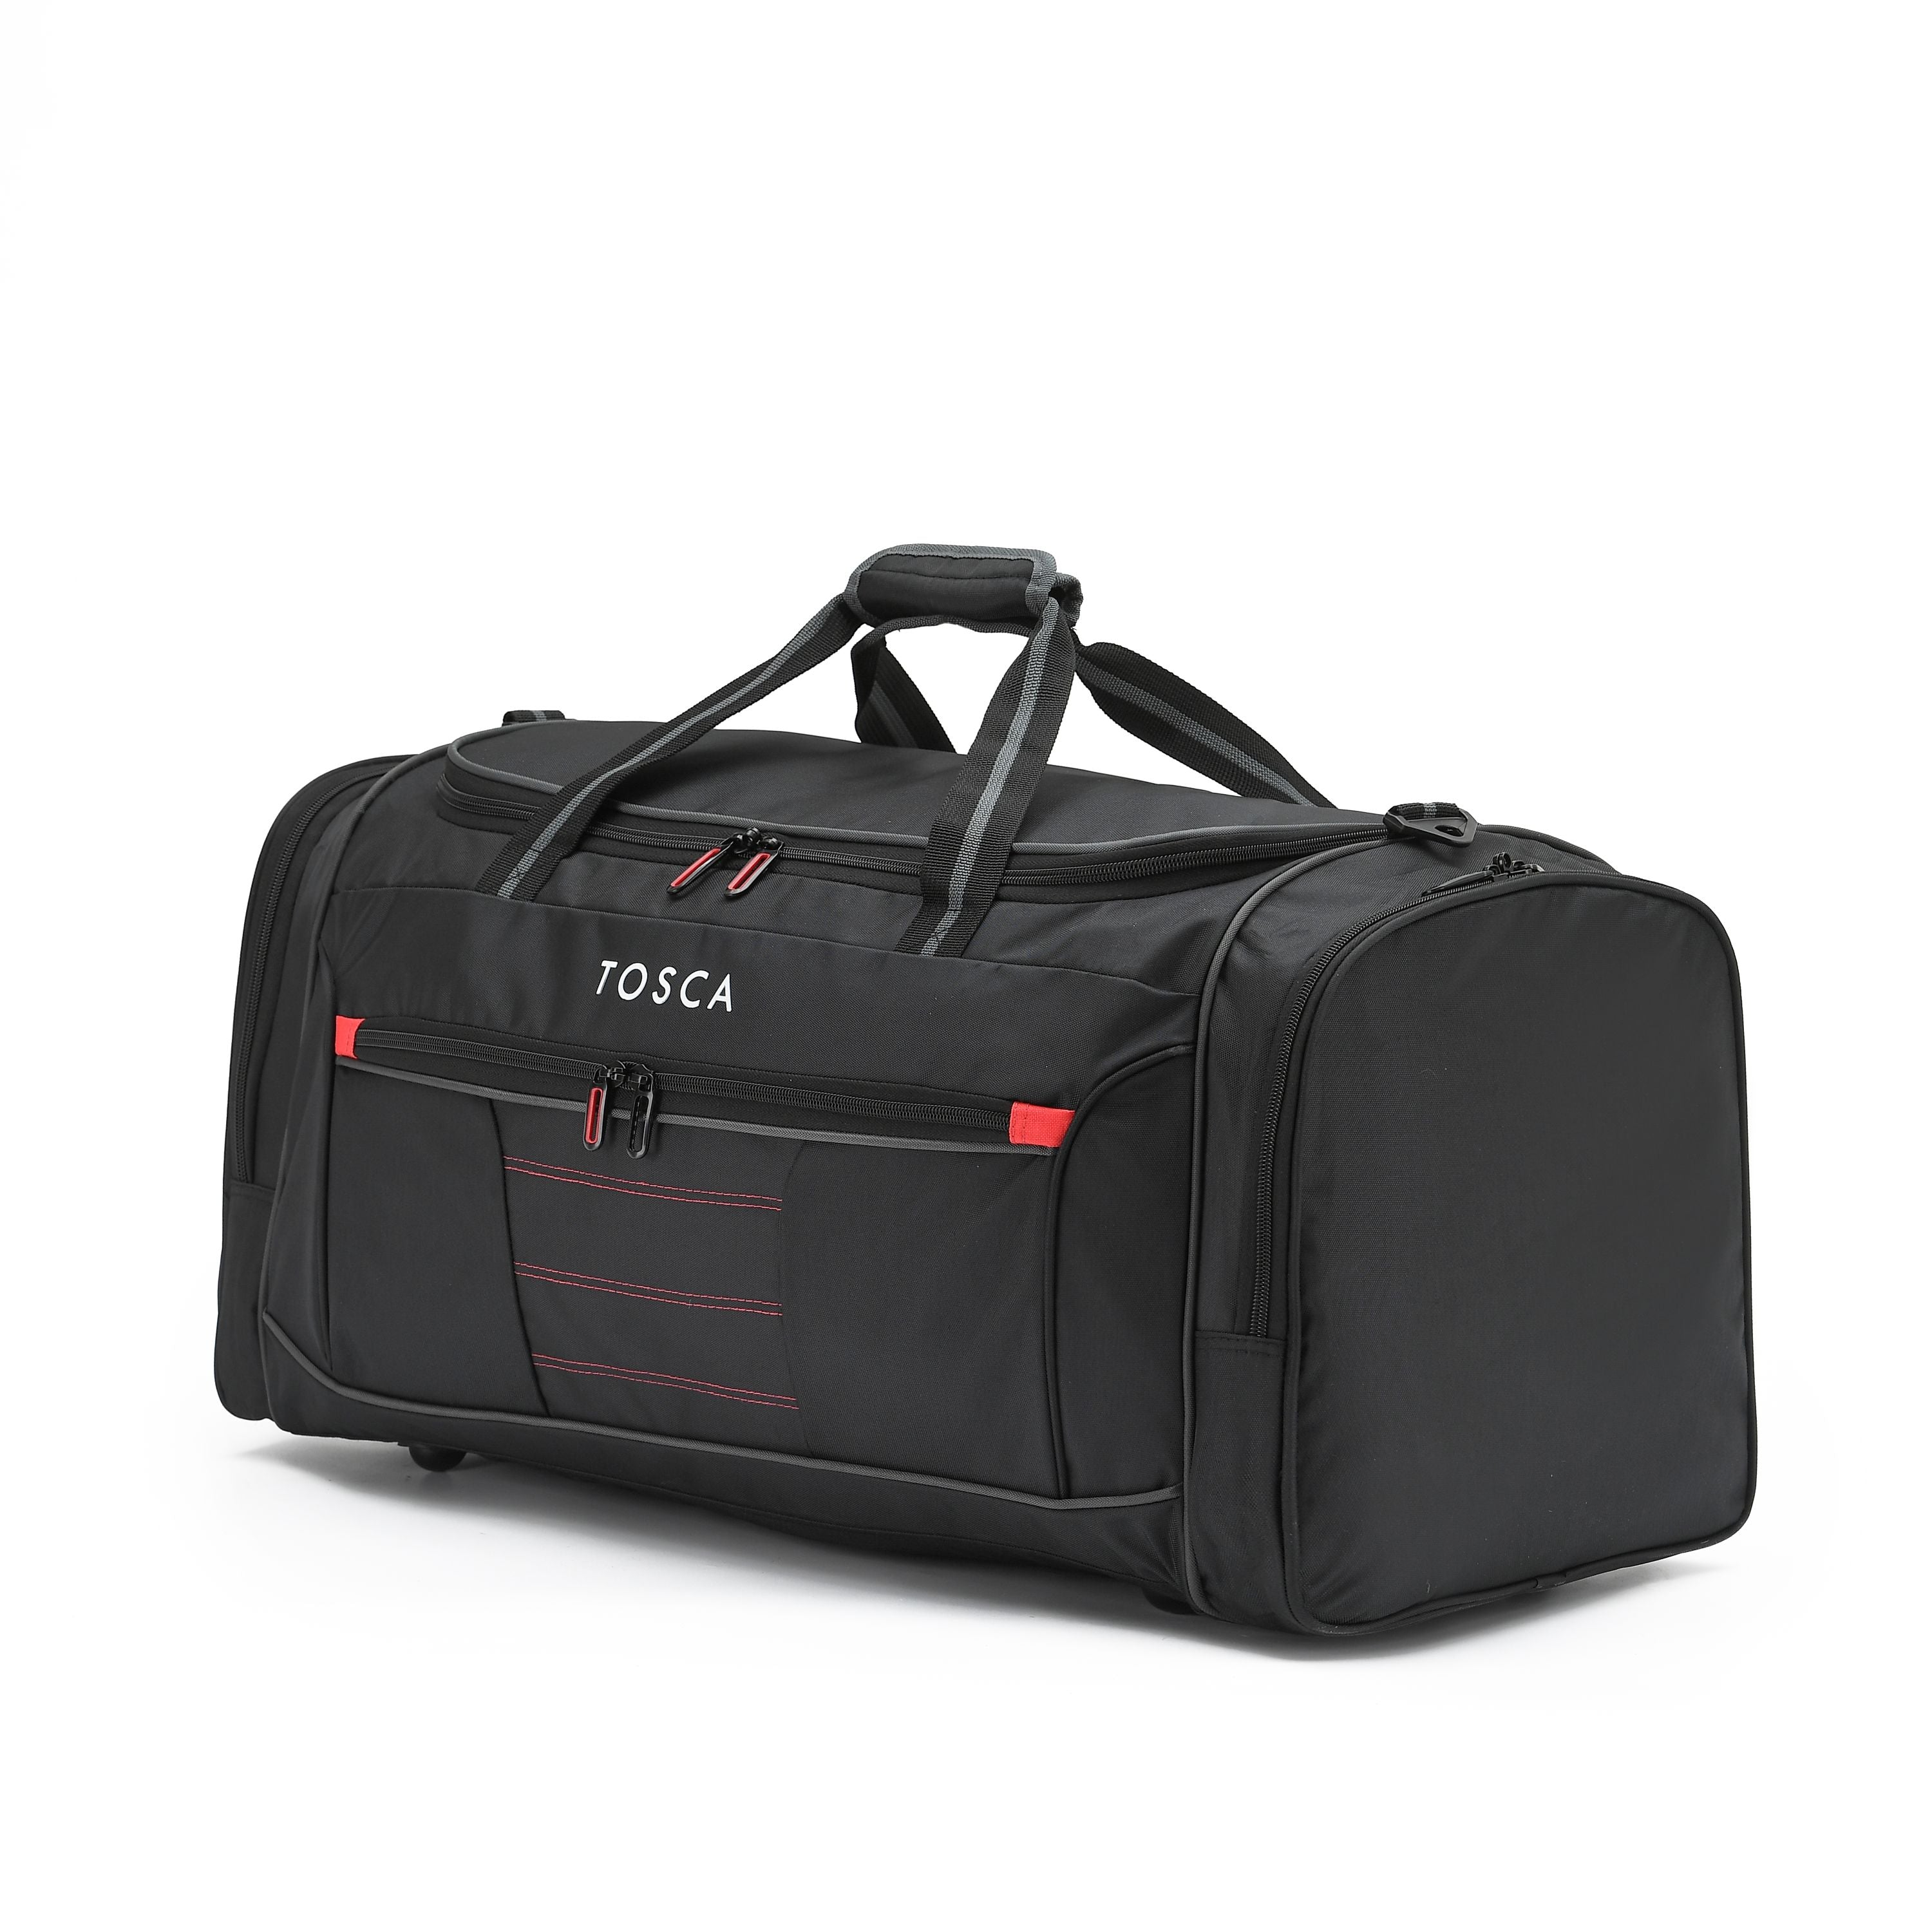 Tosca - TCA794M 70cm Medium Duffle Bag - Black/Red - 0